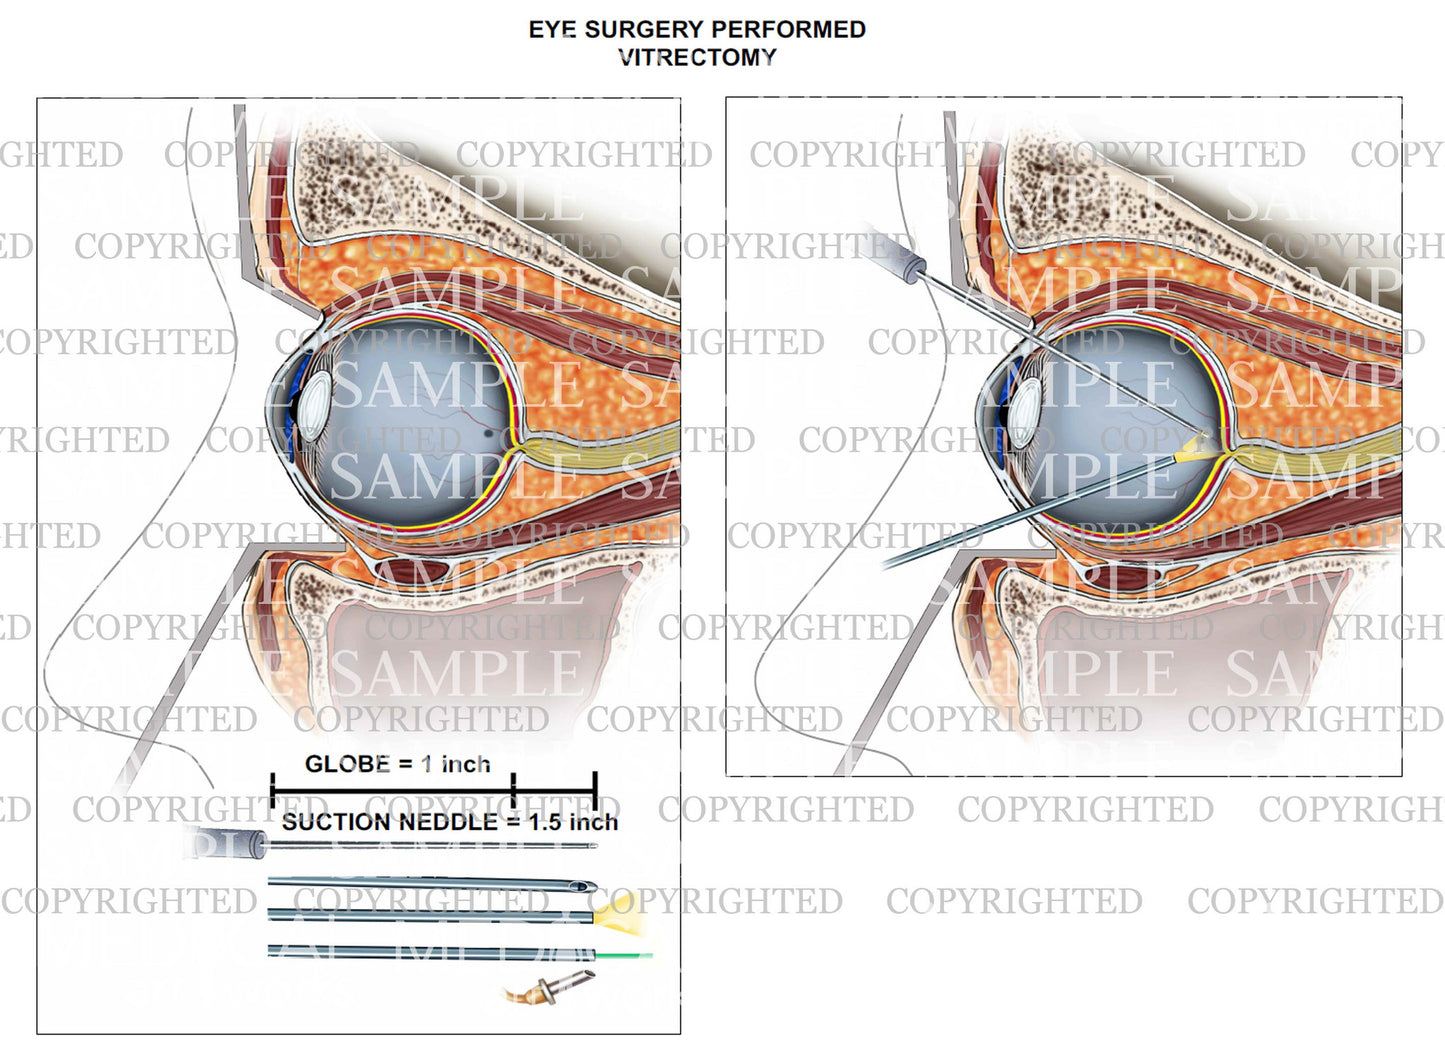 Eye surgery - Vitrectomy